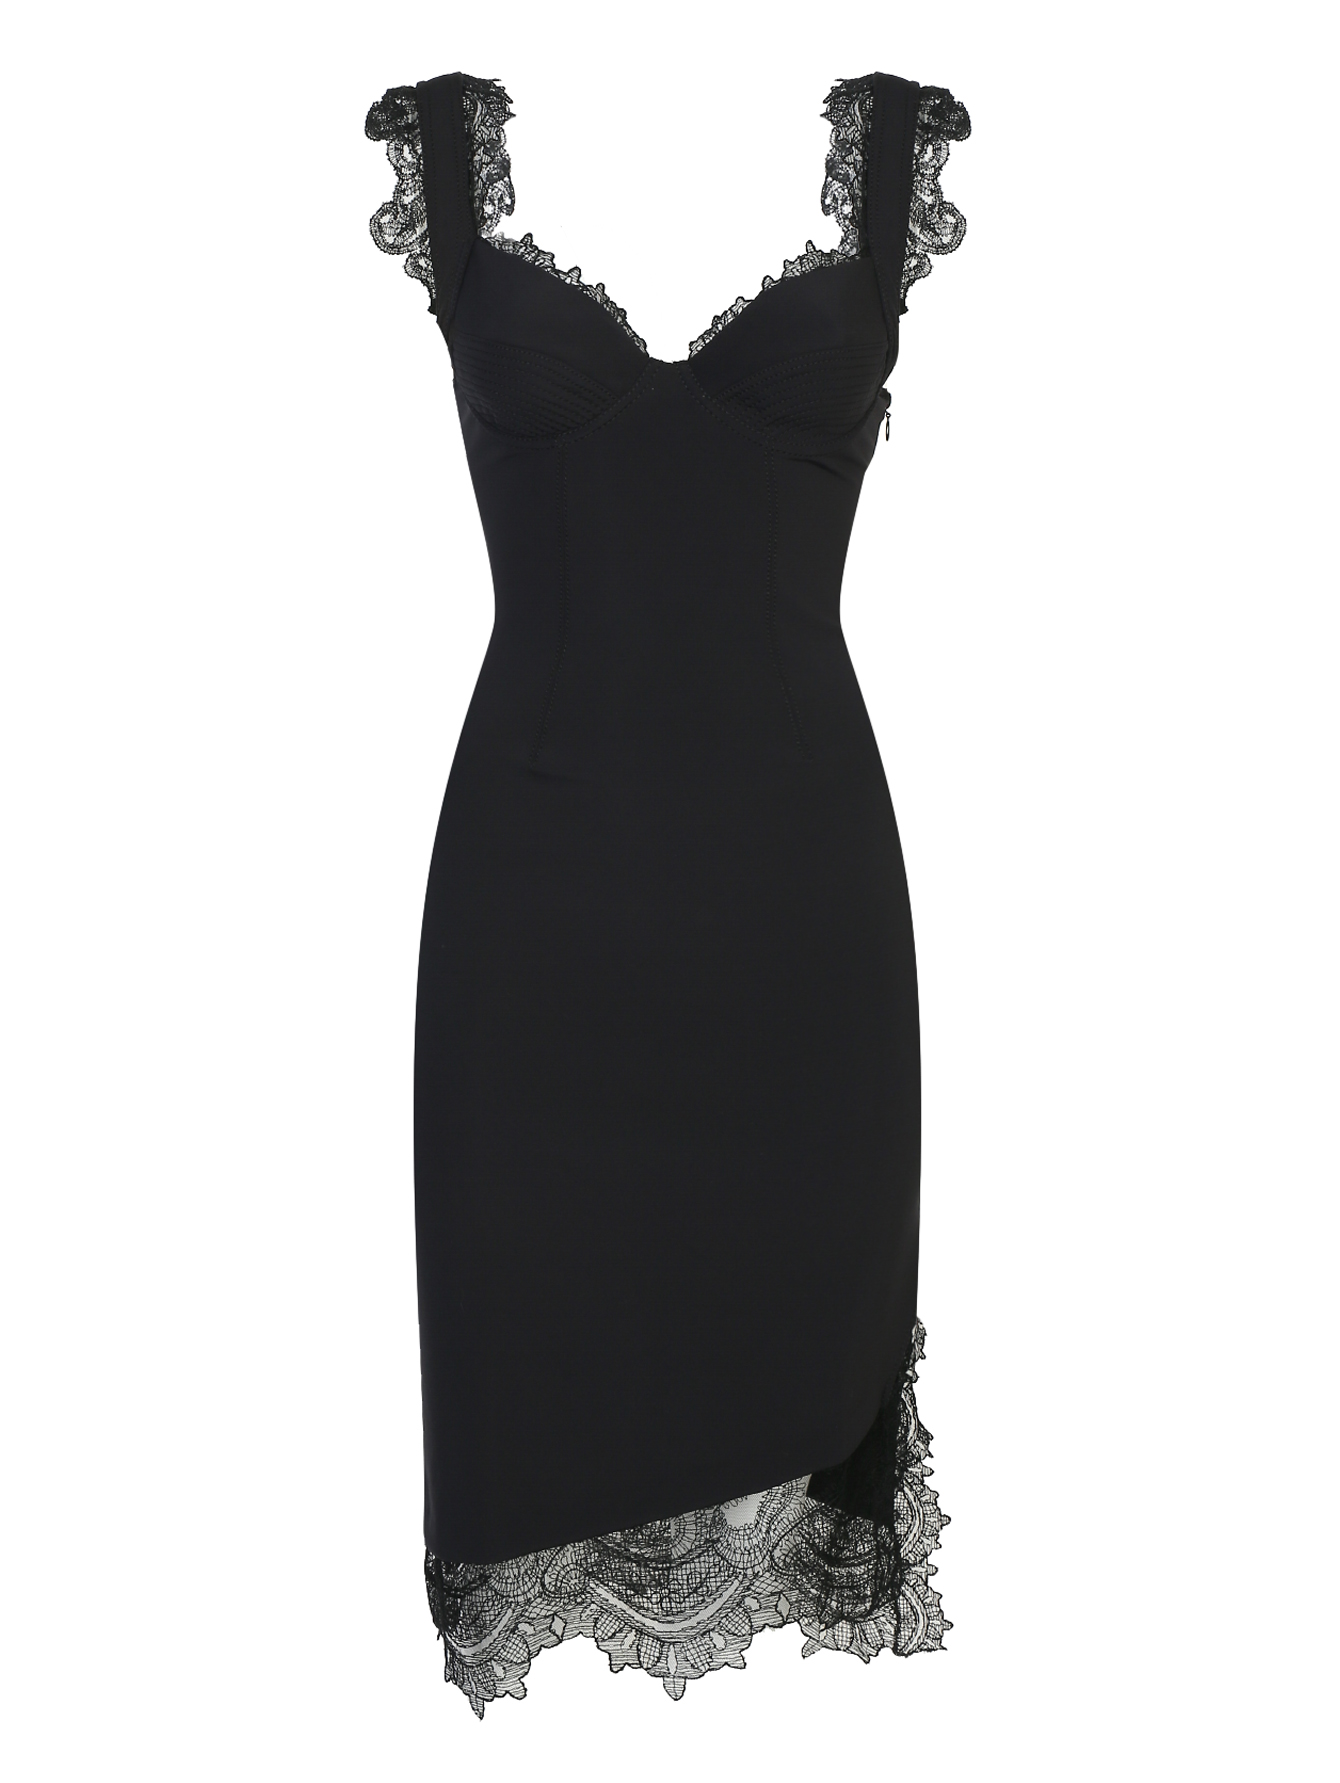 Платье Эрмано Шервино черное с кружевом